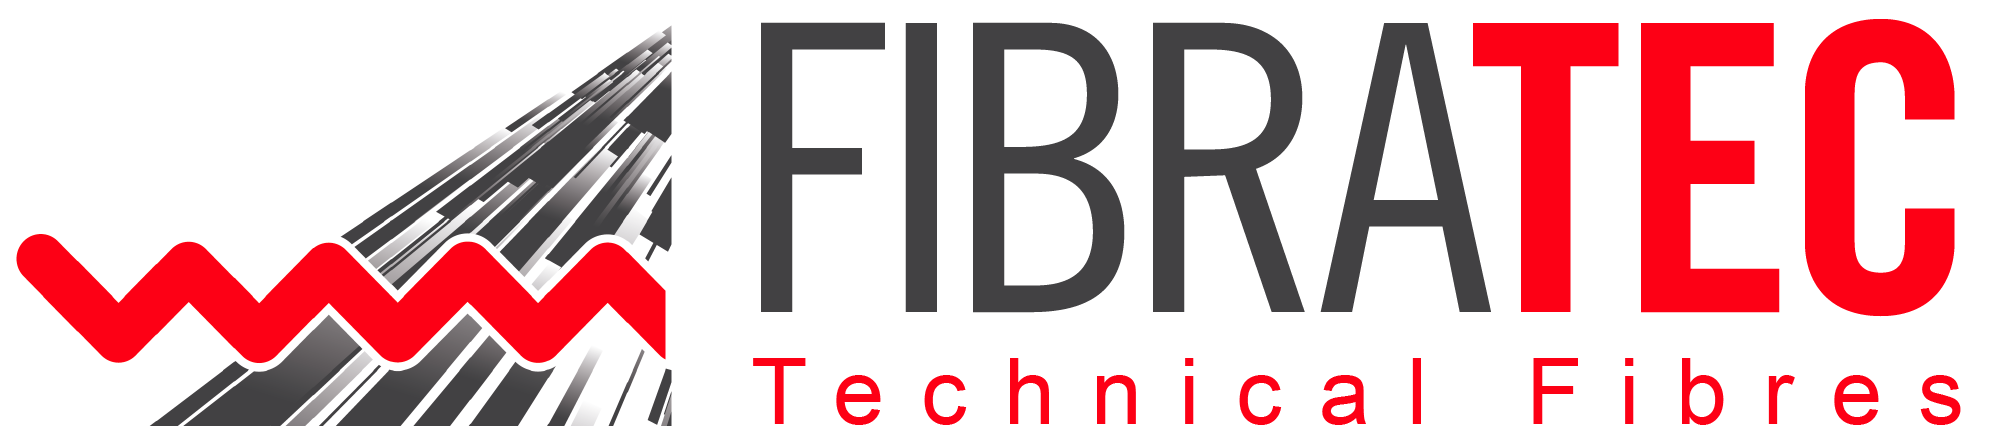 FibraTec-Technical-Fibres_Concrete-Fibres_Steel-Mesh_Logo.png